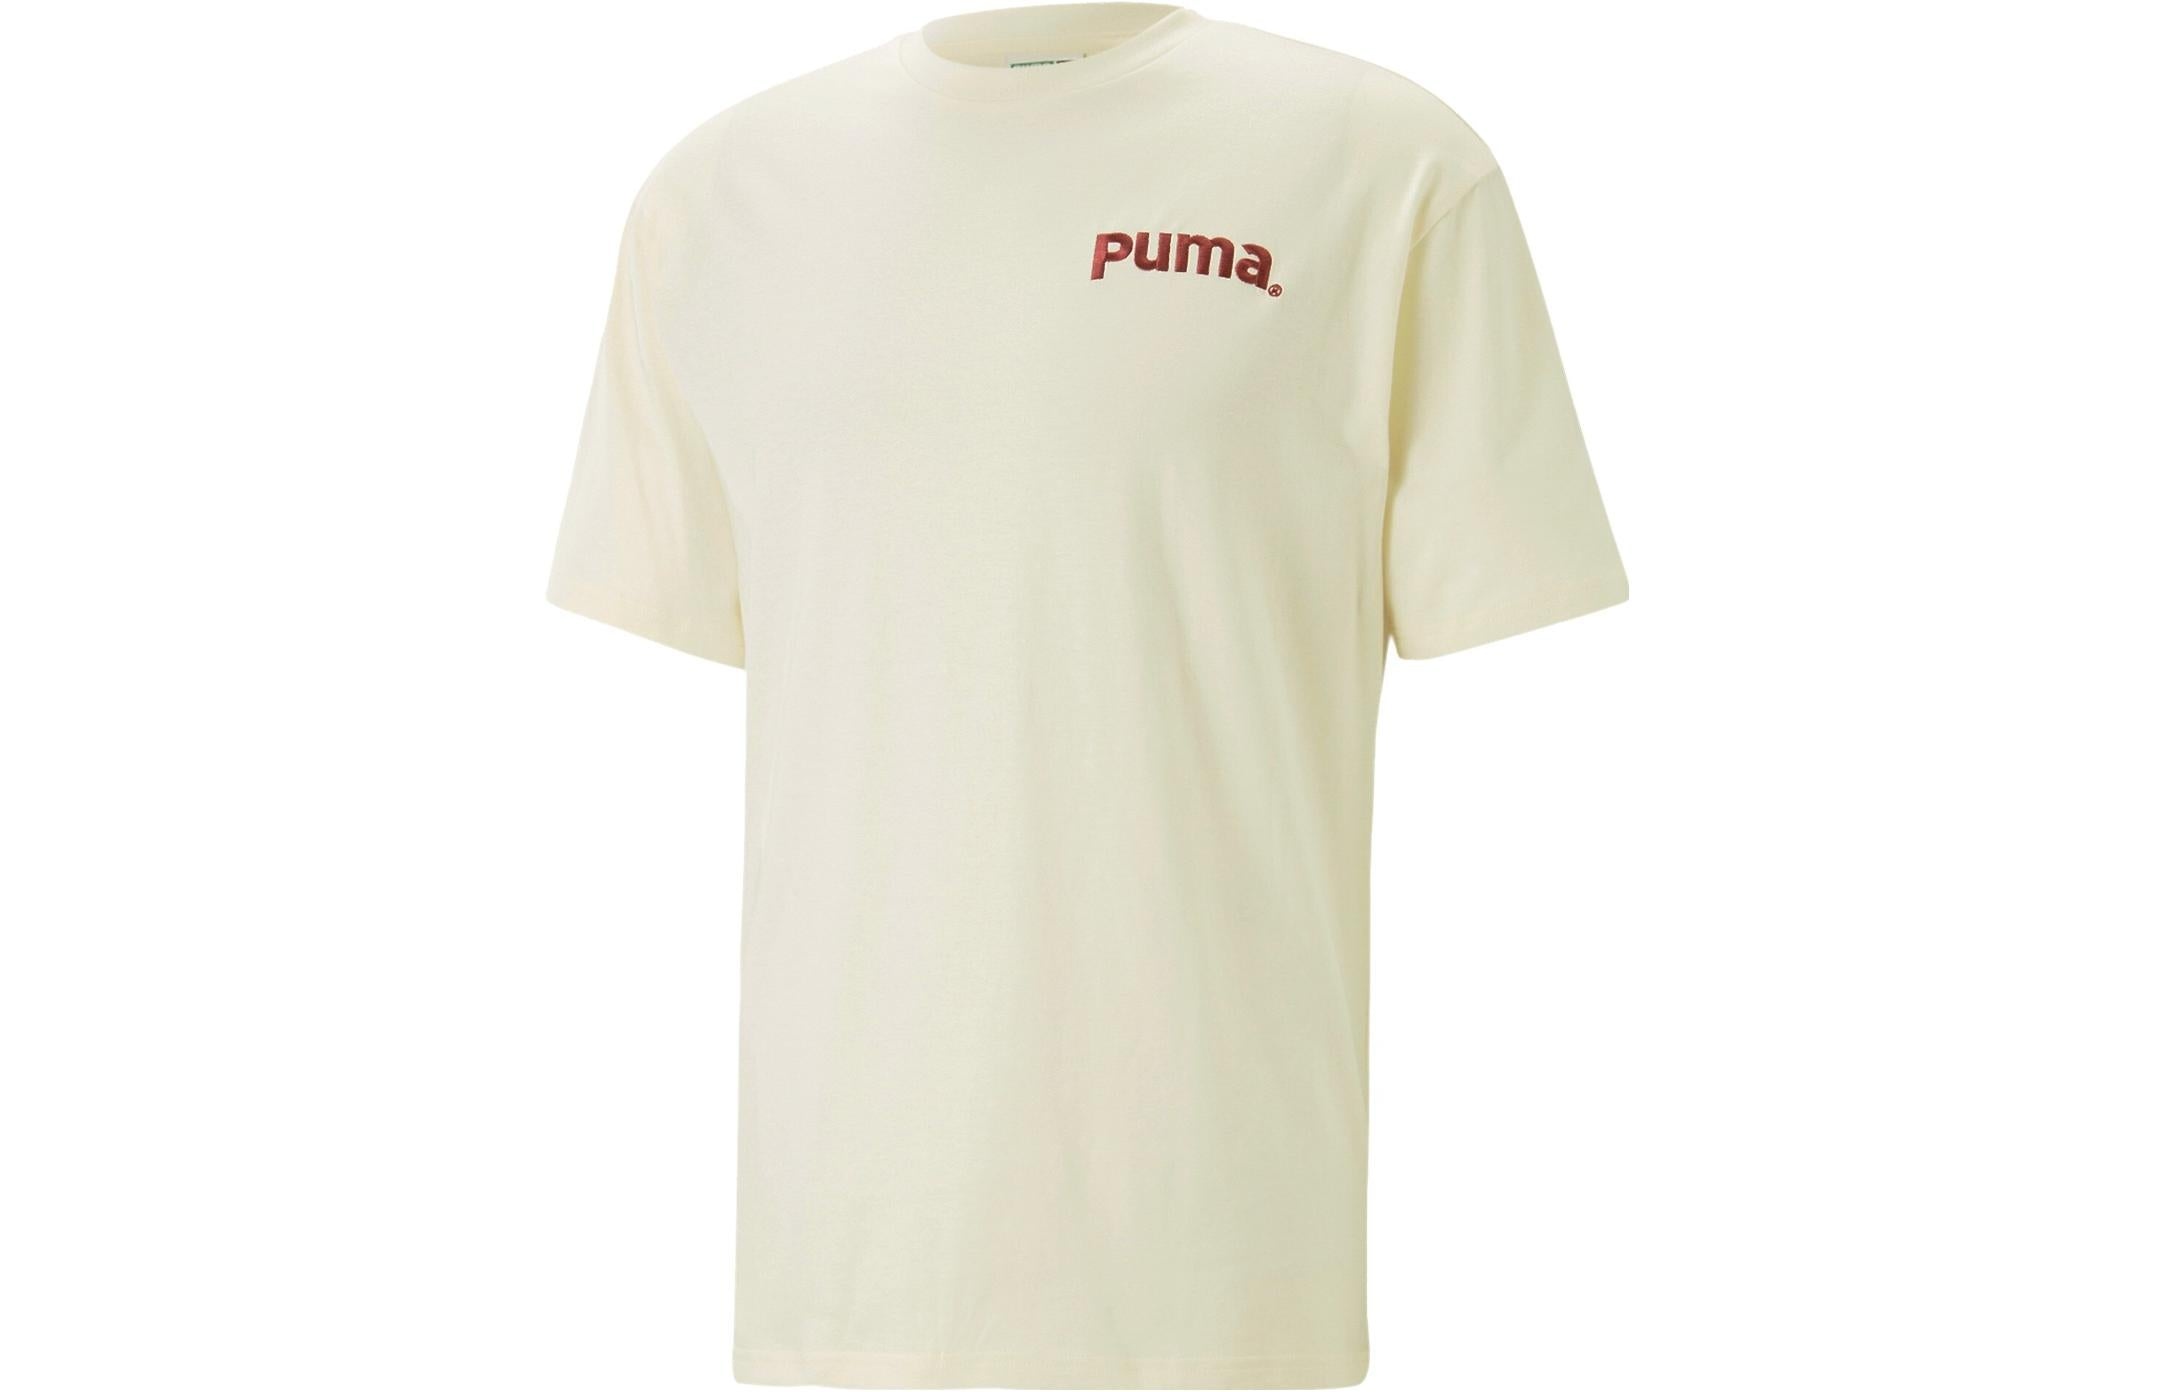 PUMA Casual T-Shirt 'White' 622536-65 - 1